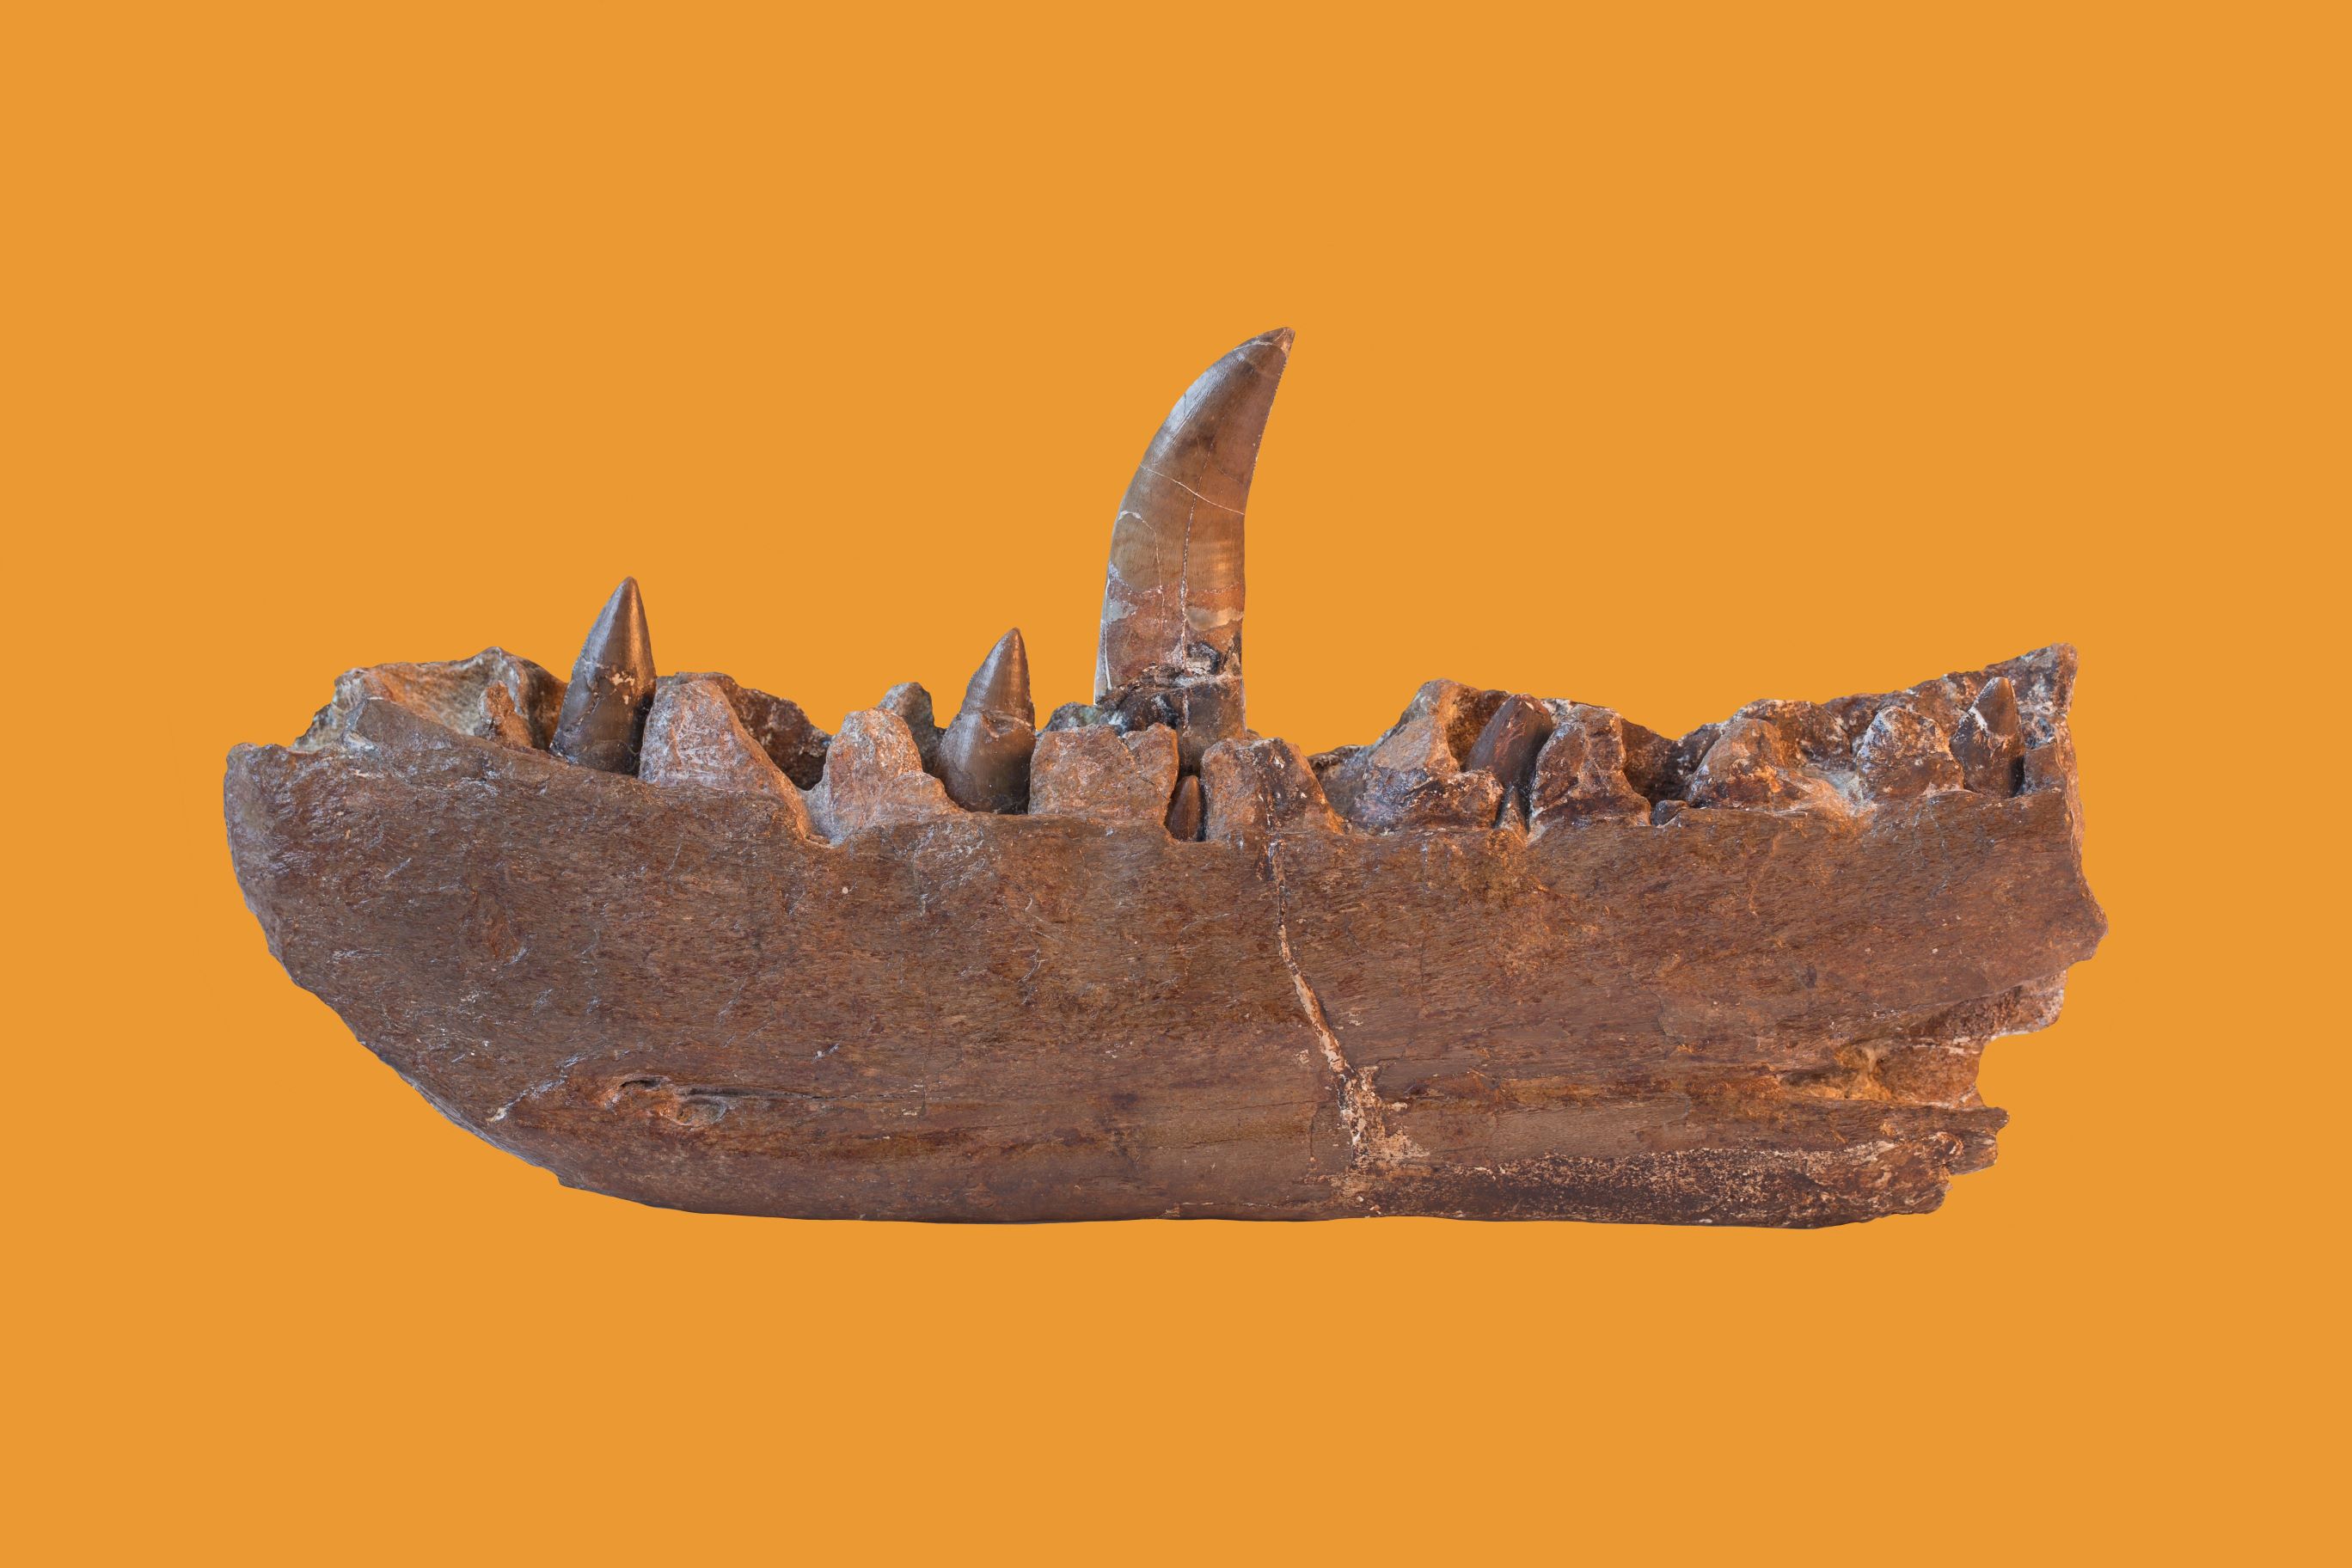 Megalosaurus type specimen, a fossilised jawbone with teeth